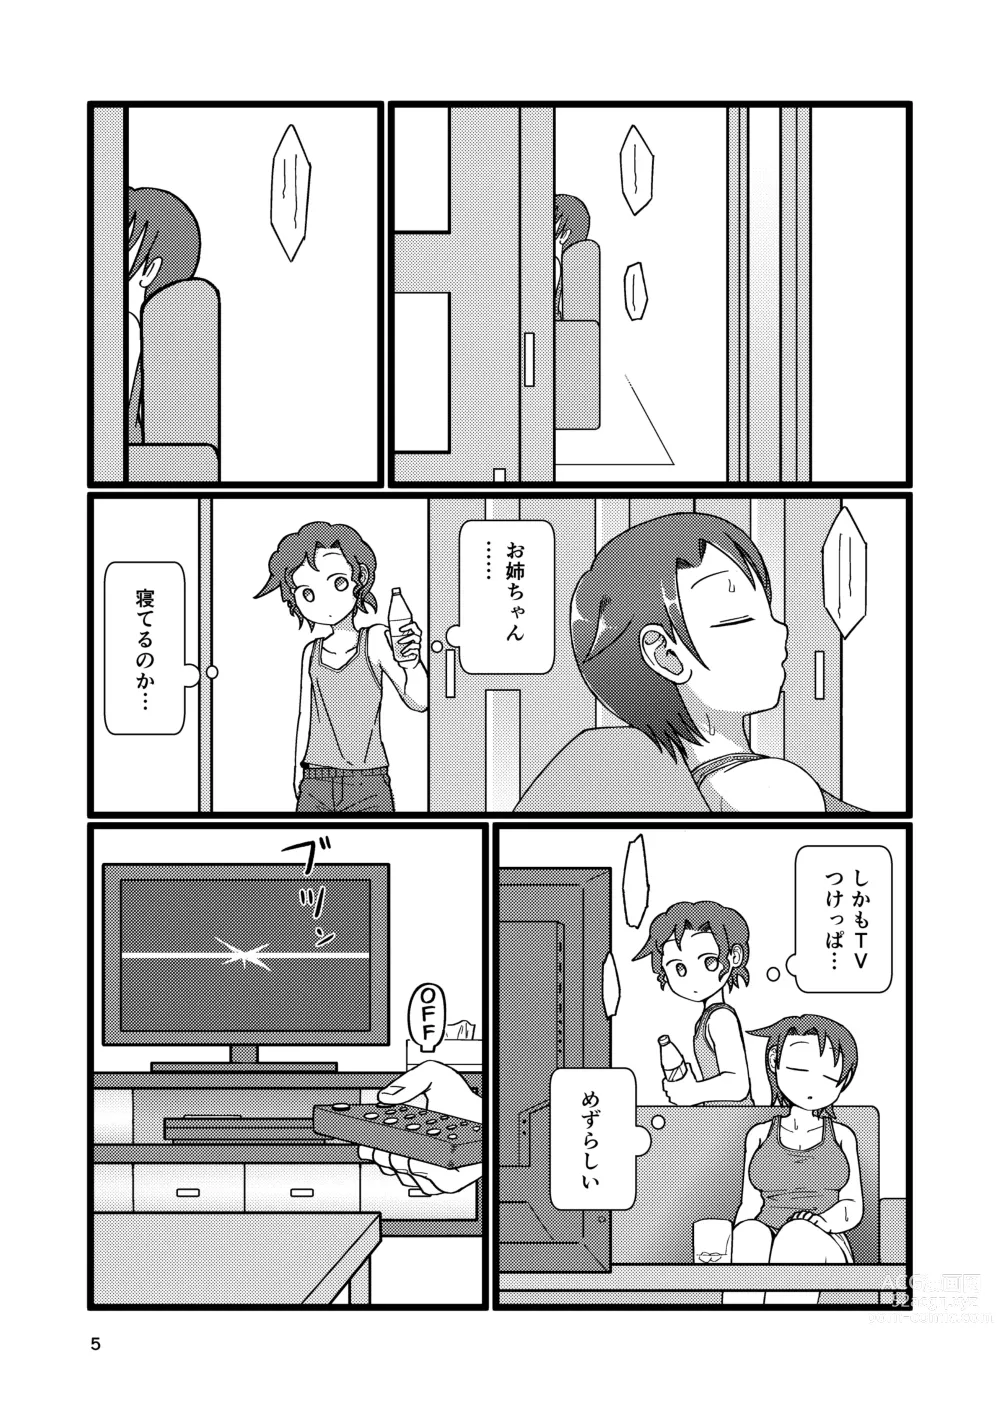 Page 5 of doujinshi Boku to Natsuyasumi no Ane